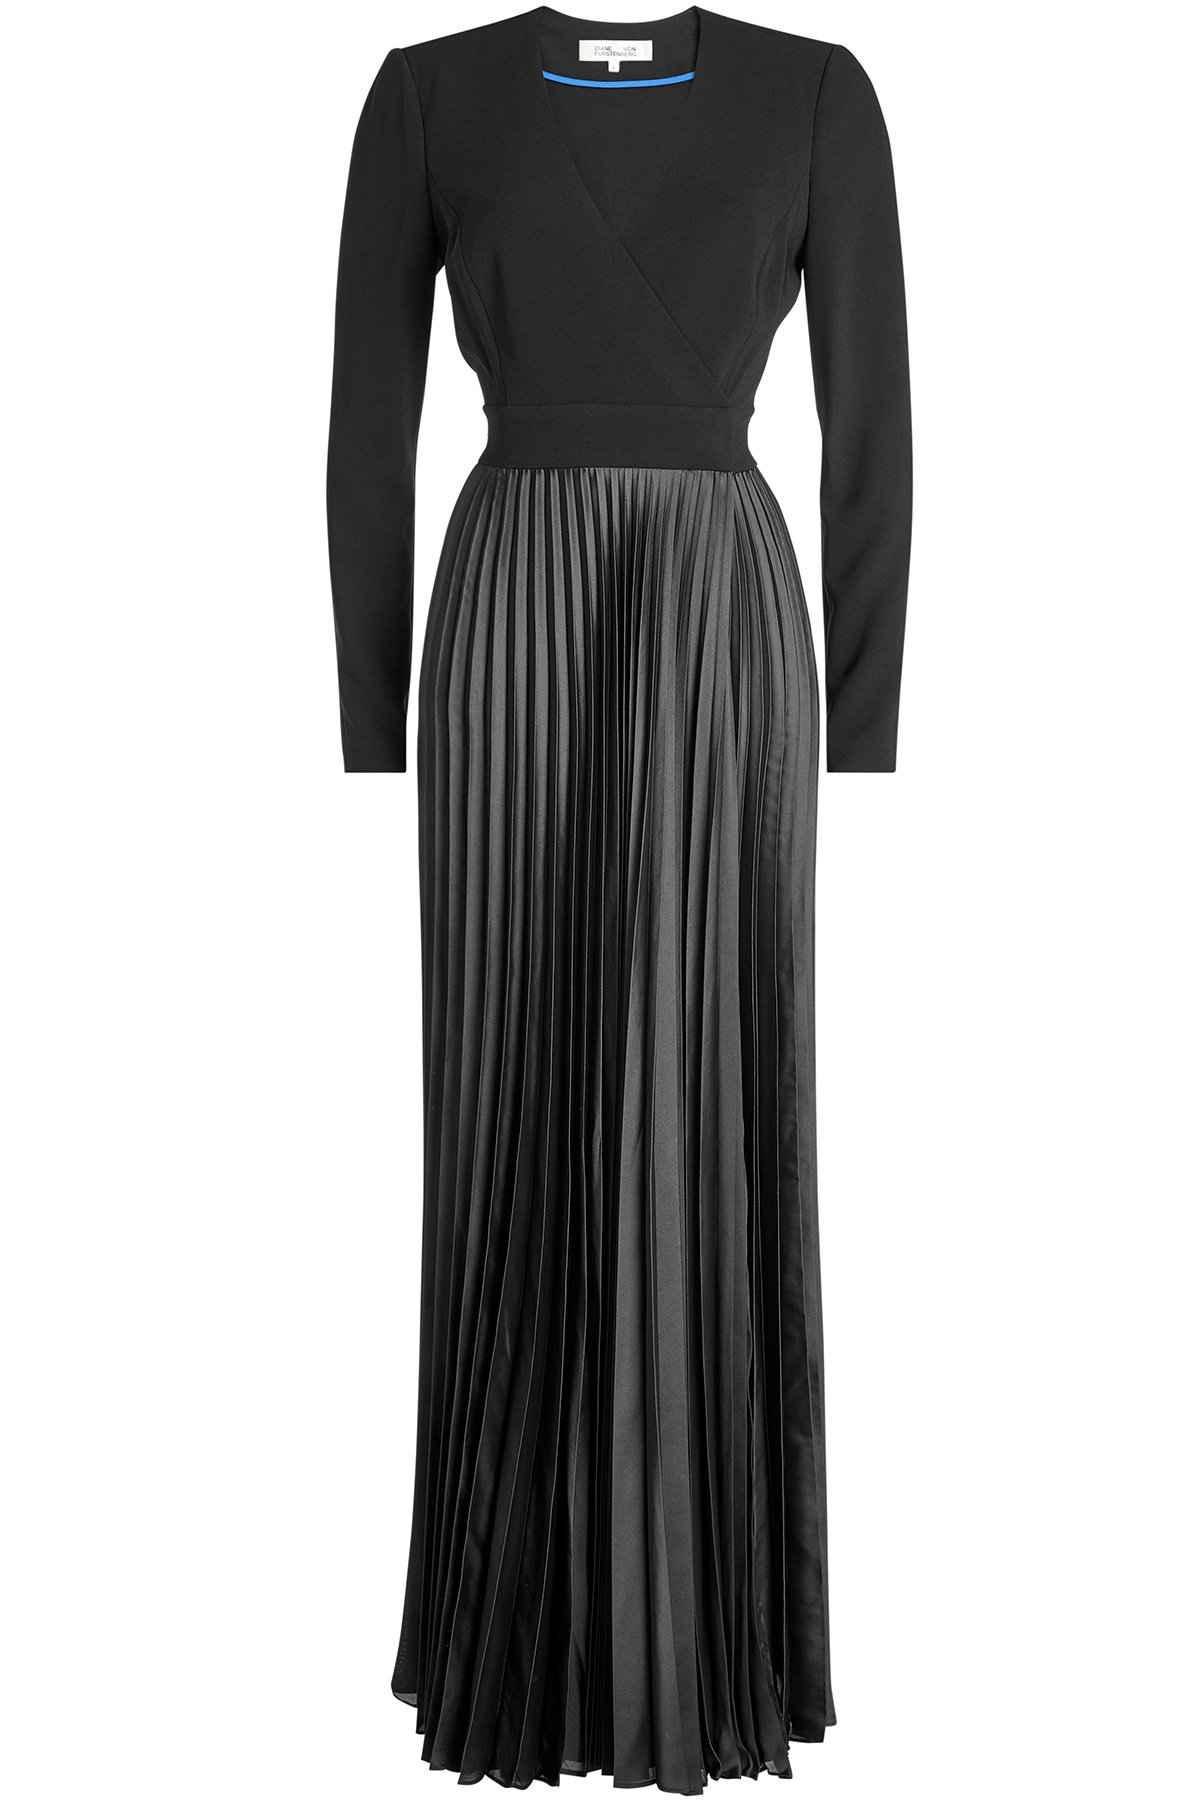 Diane von Furstenberg - Dress with Gathered Waist